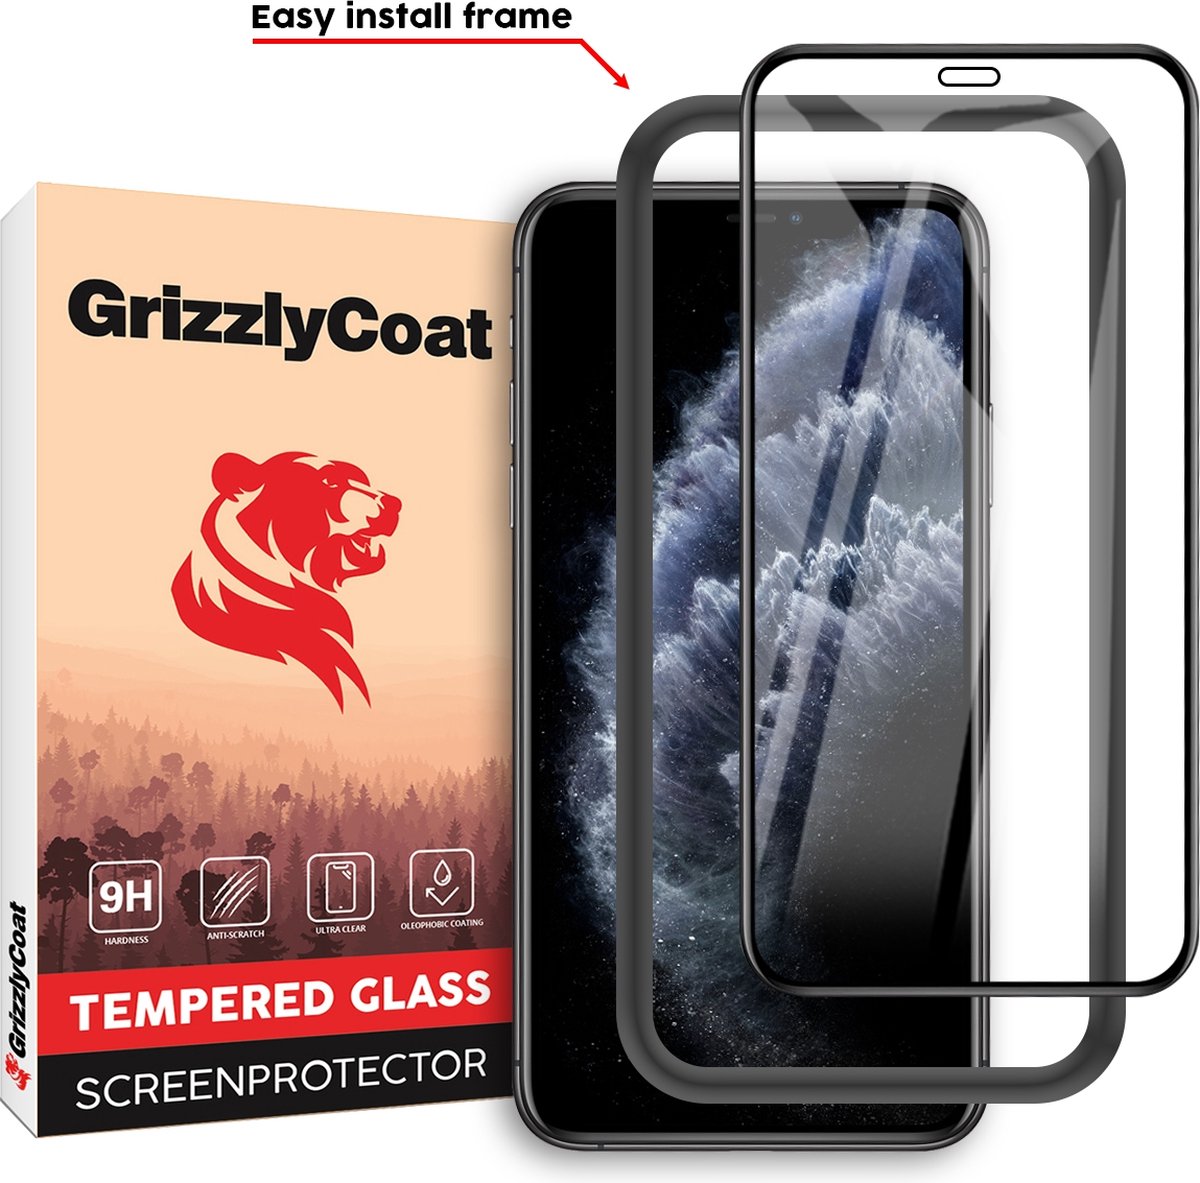 GrizzlyCoat - Screenprotector geschikt voor Apple iPhone XS Glazen | GrizzlyCoat Easy Fit Screenprotector - Case Friendly + Installatie Frame - Zwart